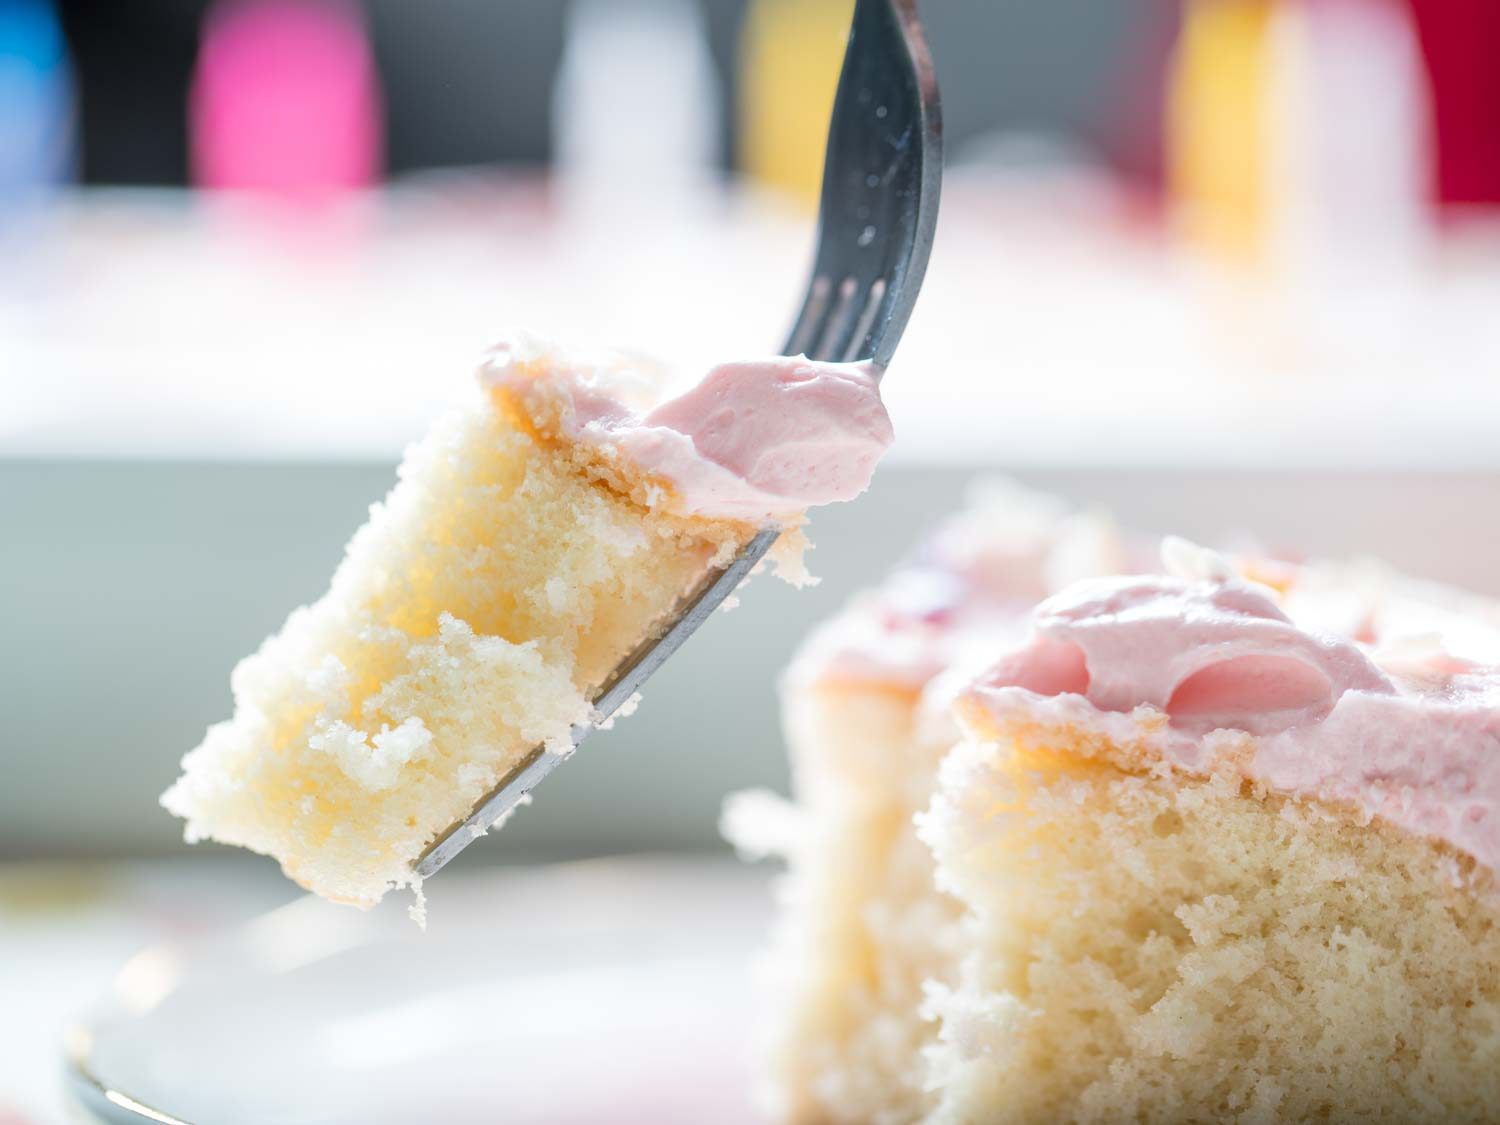 用叉子叉着一块黄色蛋糕，上面有粉红色的香草奶油糖霜。gydF4y2Ba